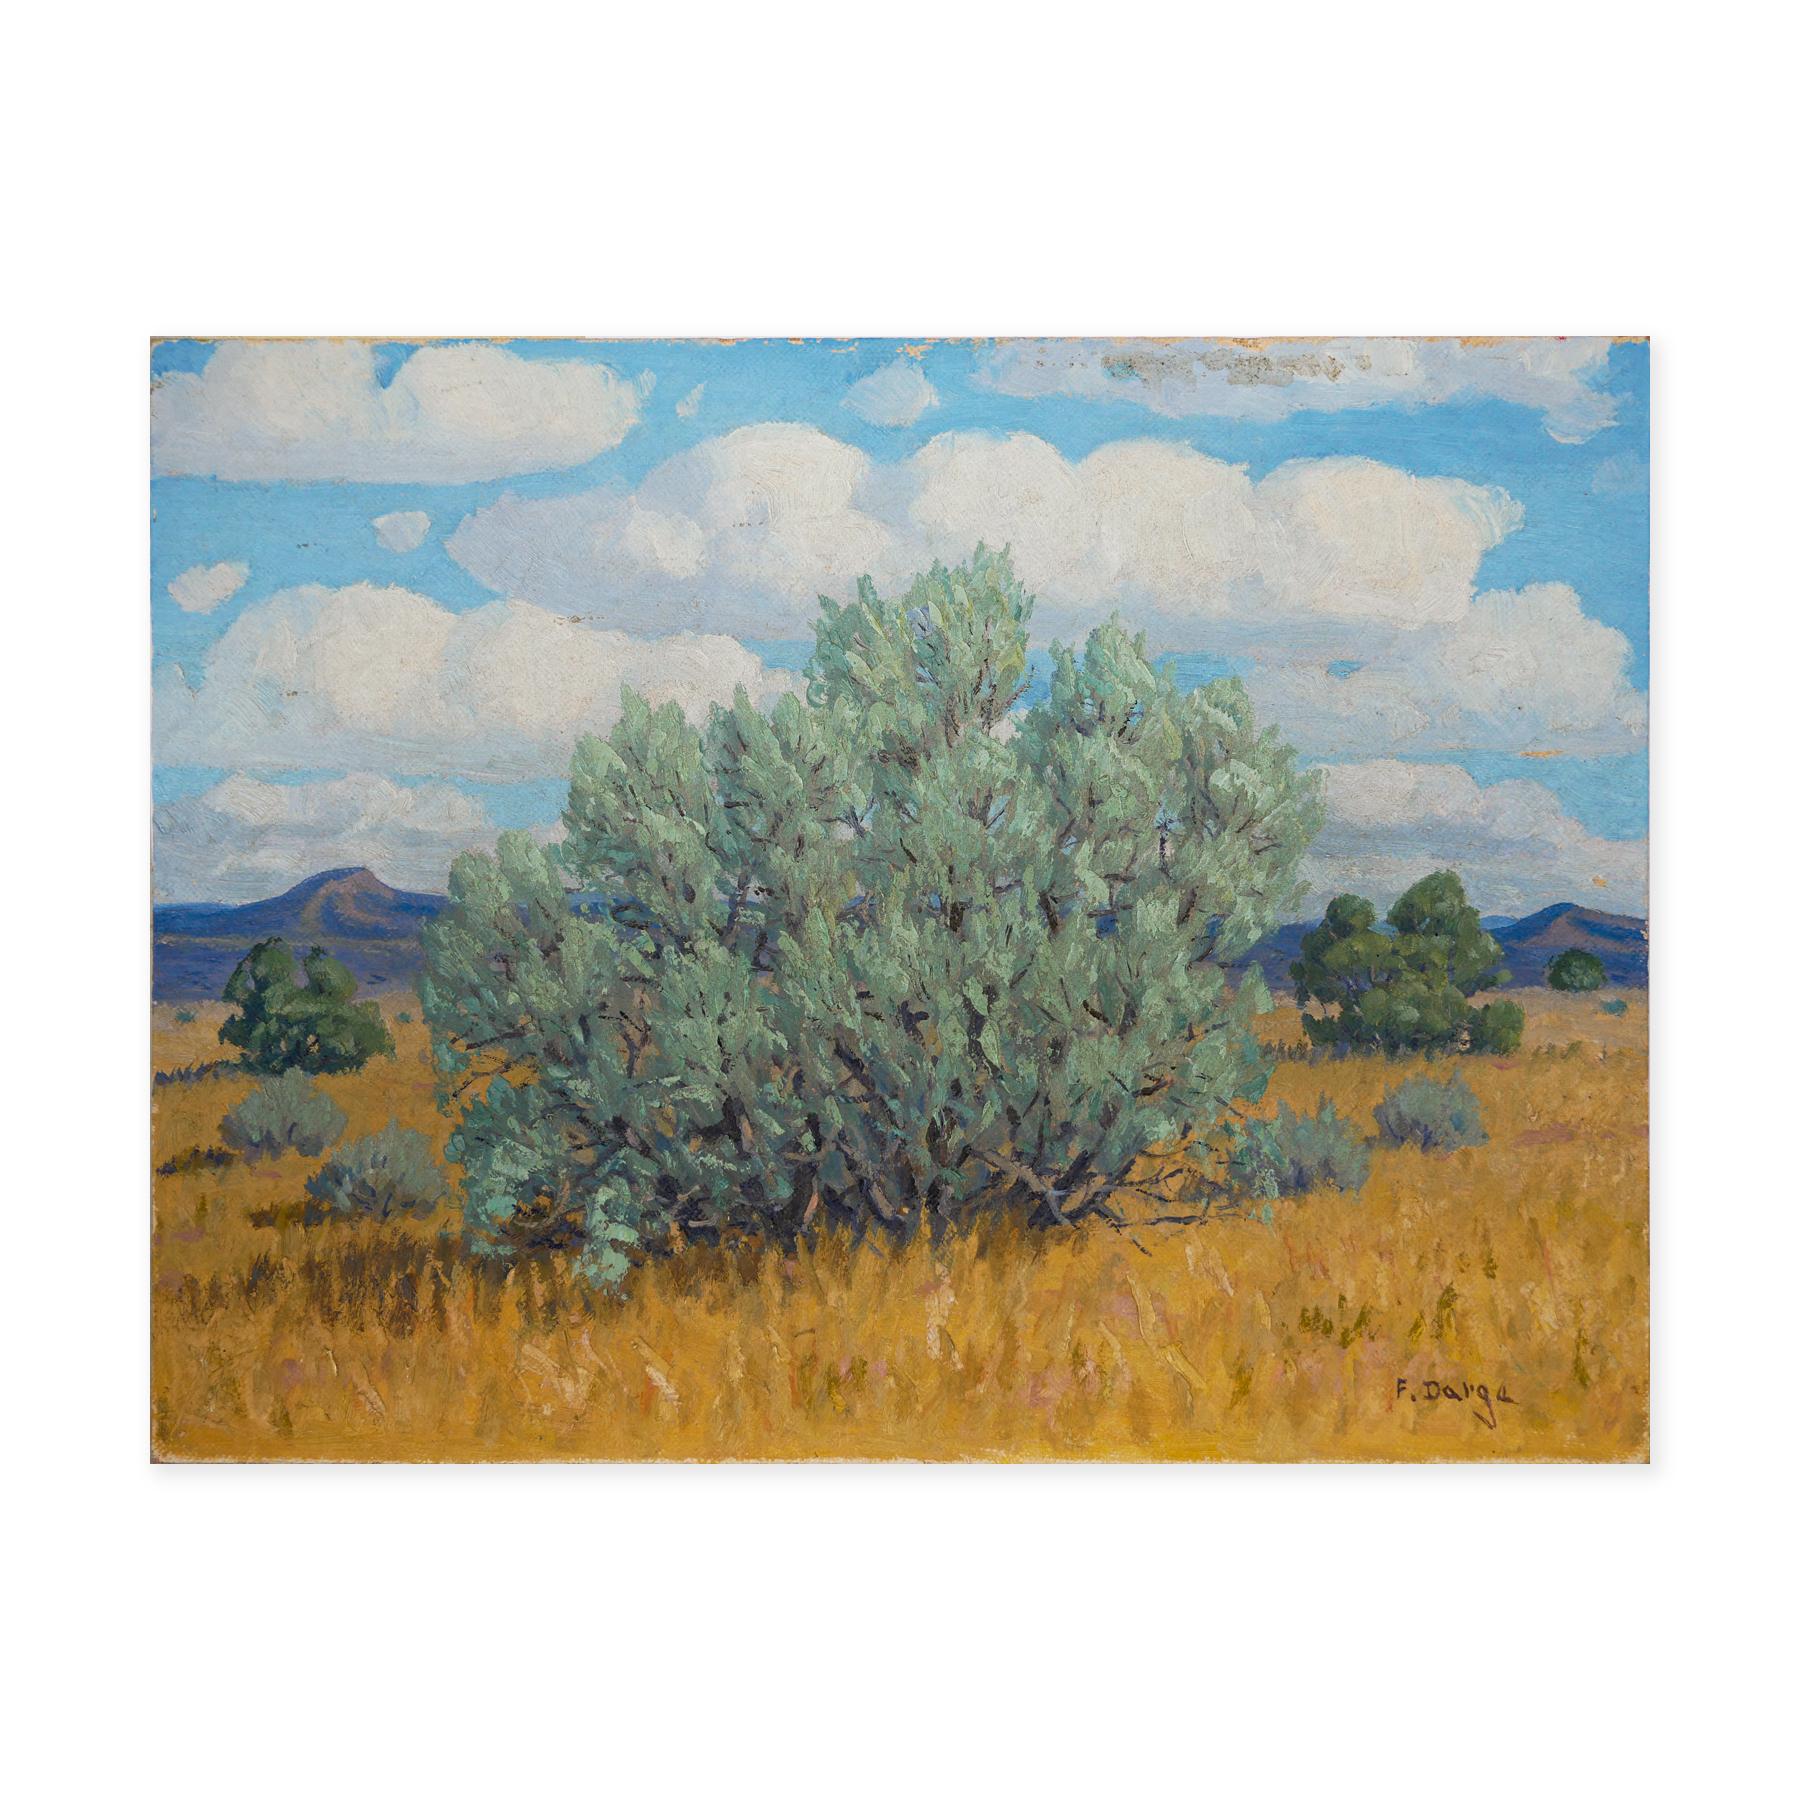 Abstrakt-impressionistische westliche Wüstenlandschaft in Grün, Gelb und Blau – Painting von Fred Darge